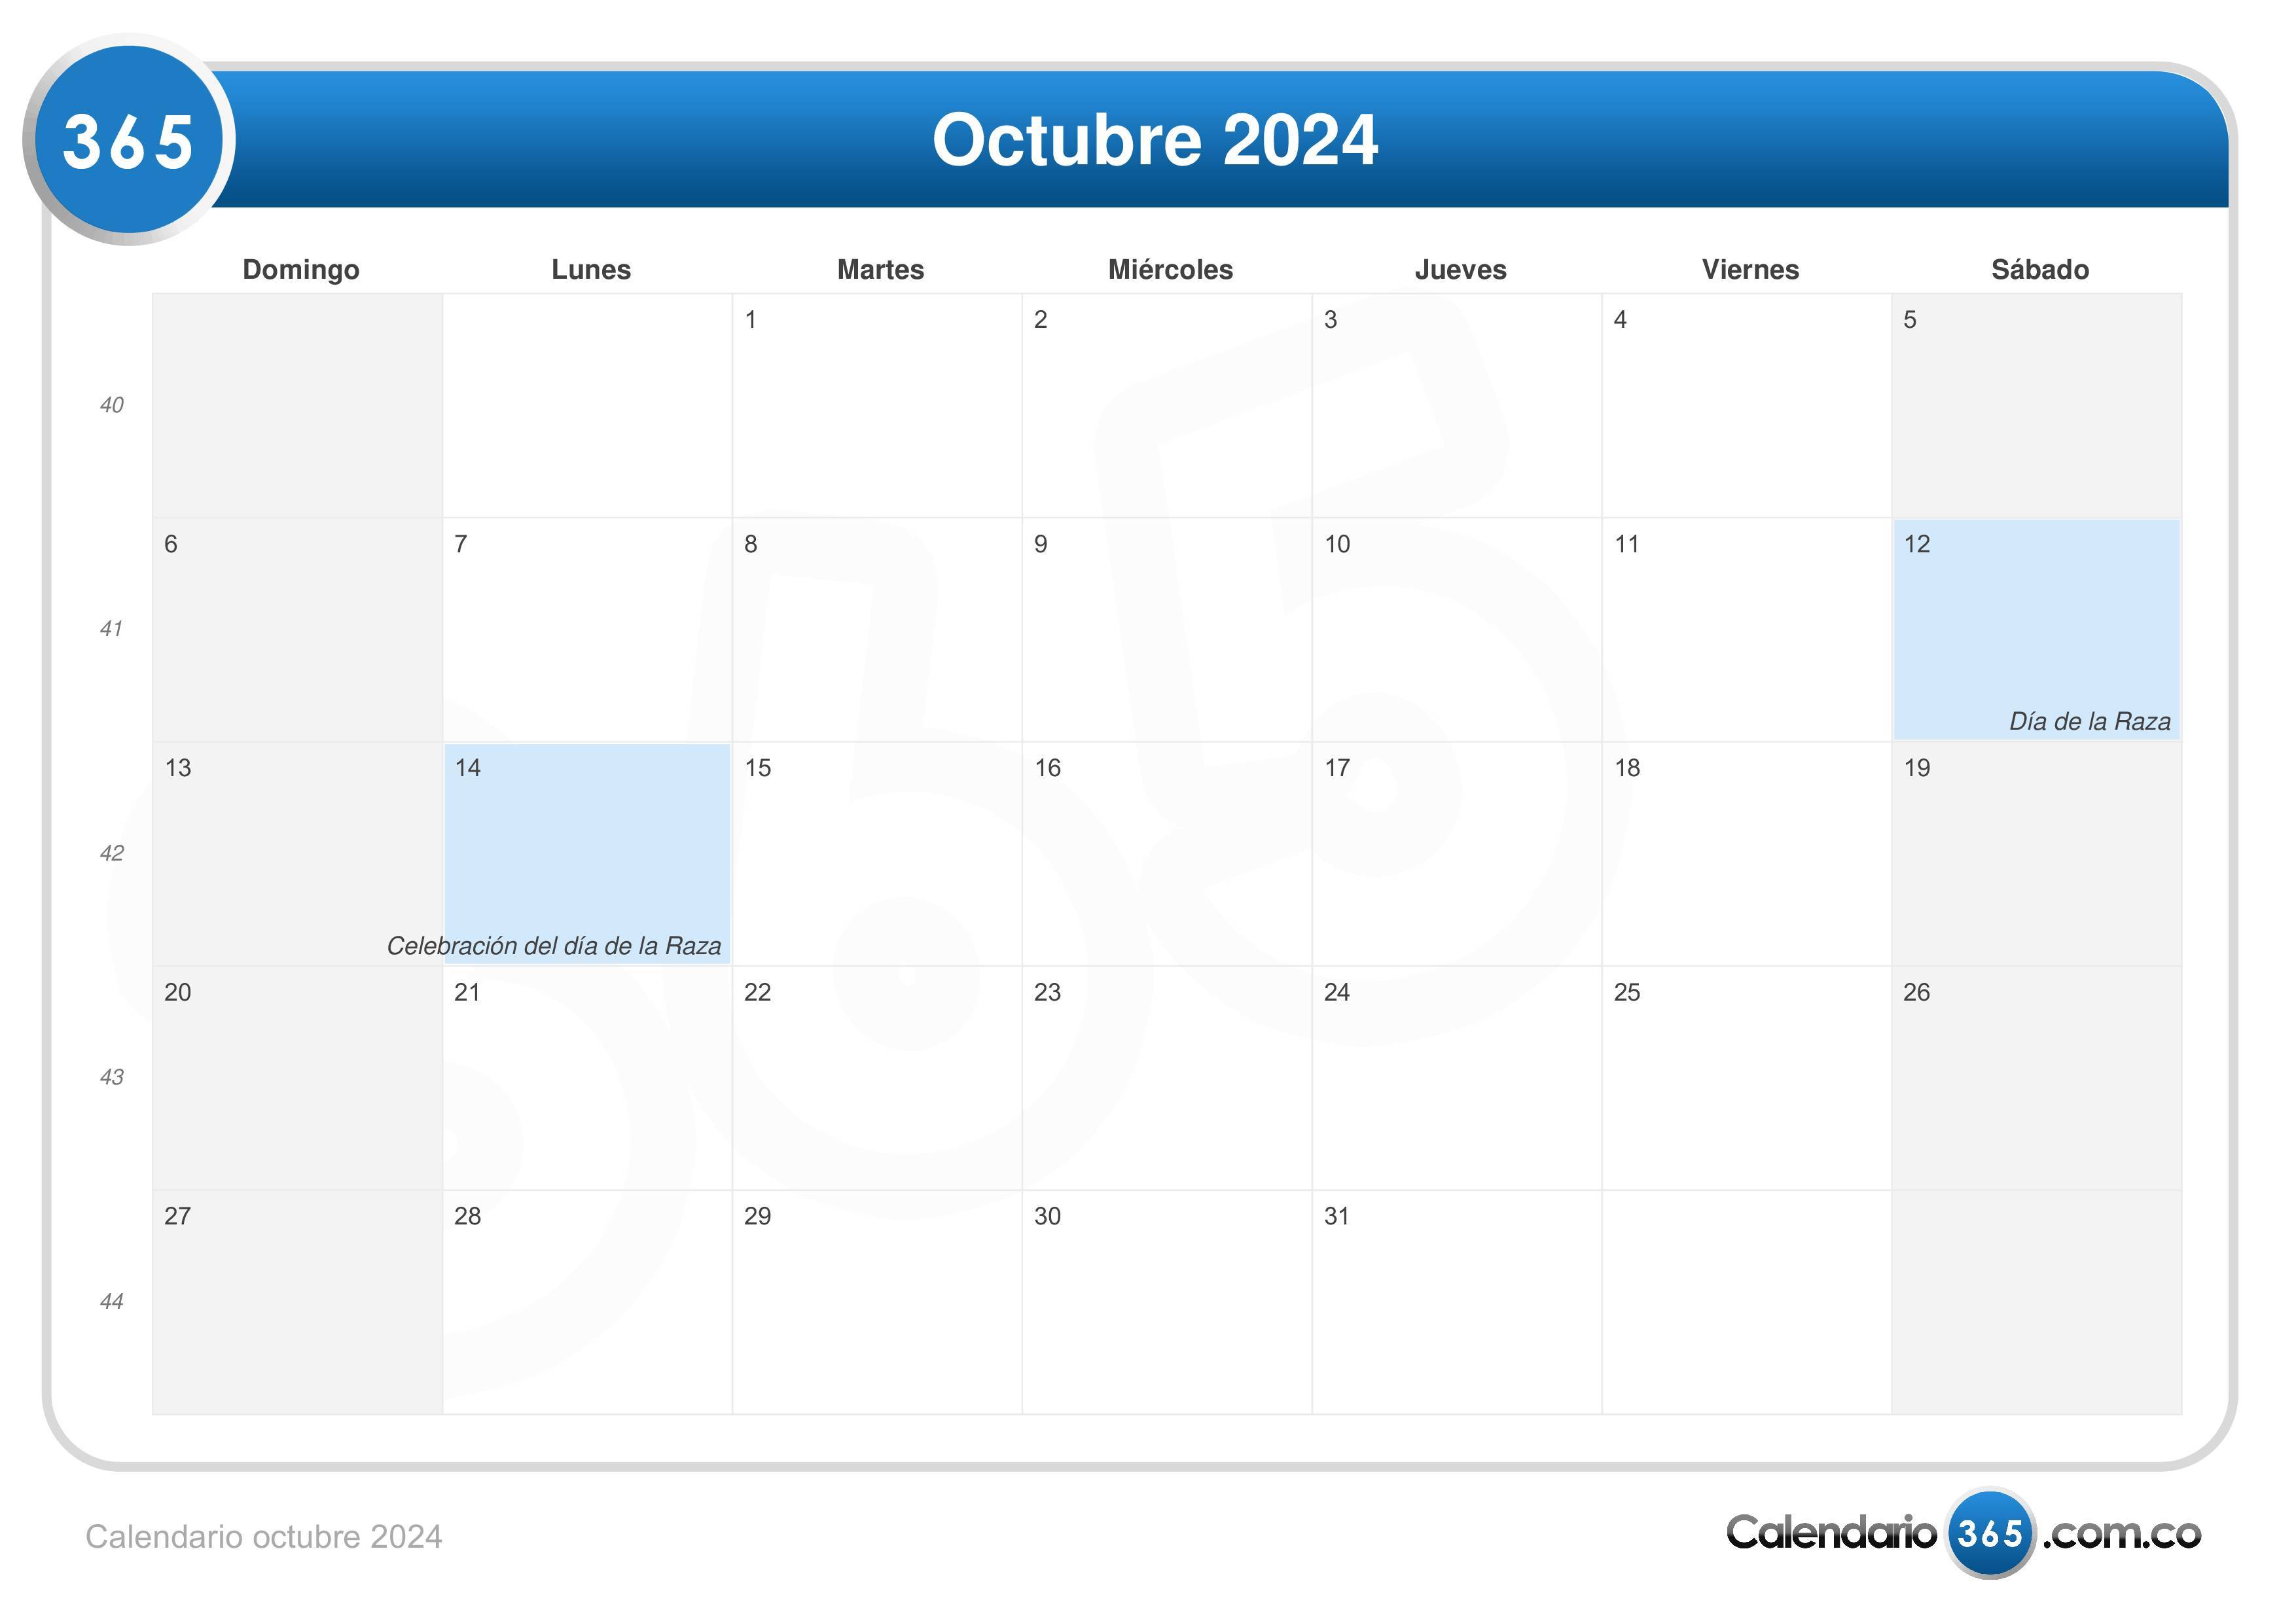 Calendario Word Outubro 2024 Calendar 2024 All Holidays